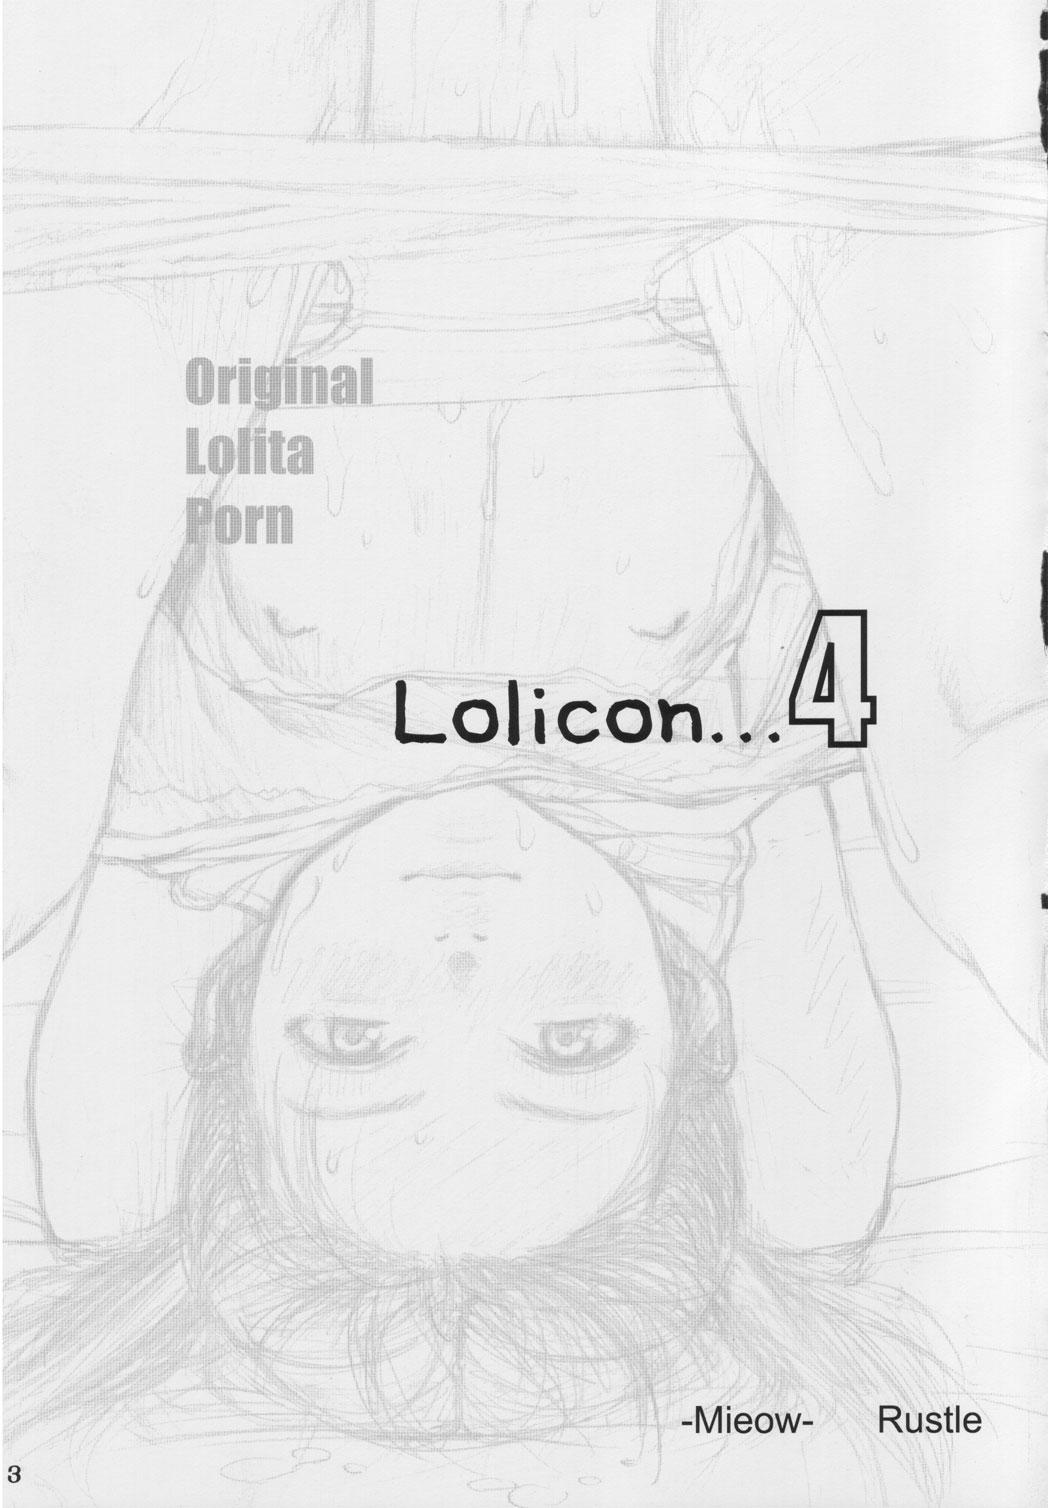 Lolicon 4 1